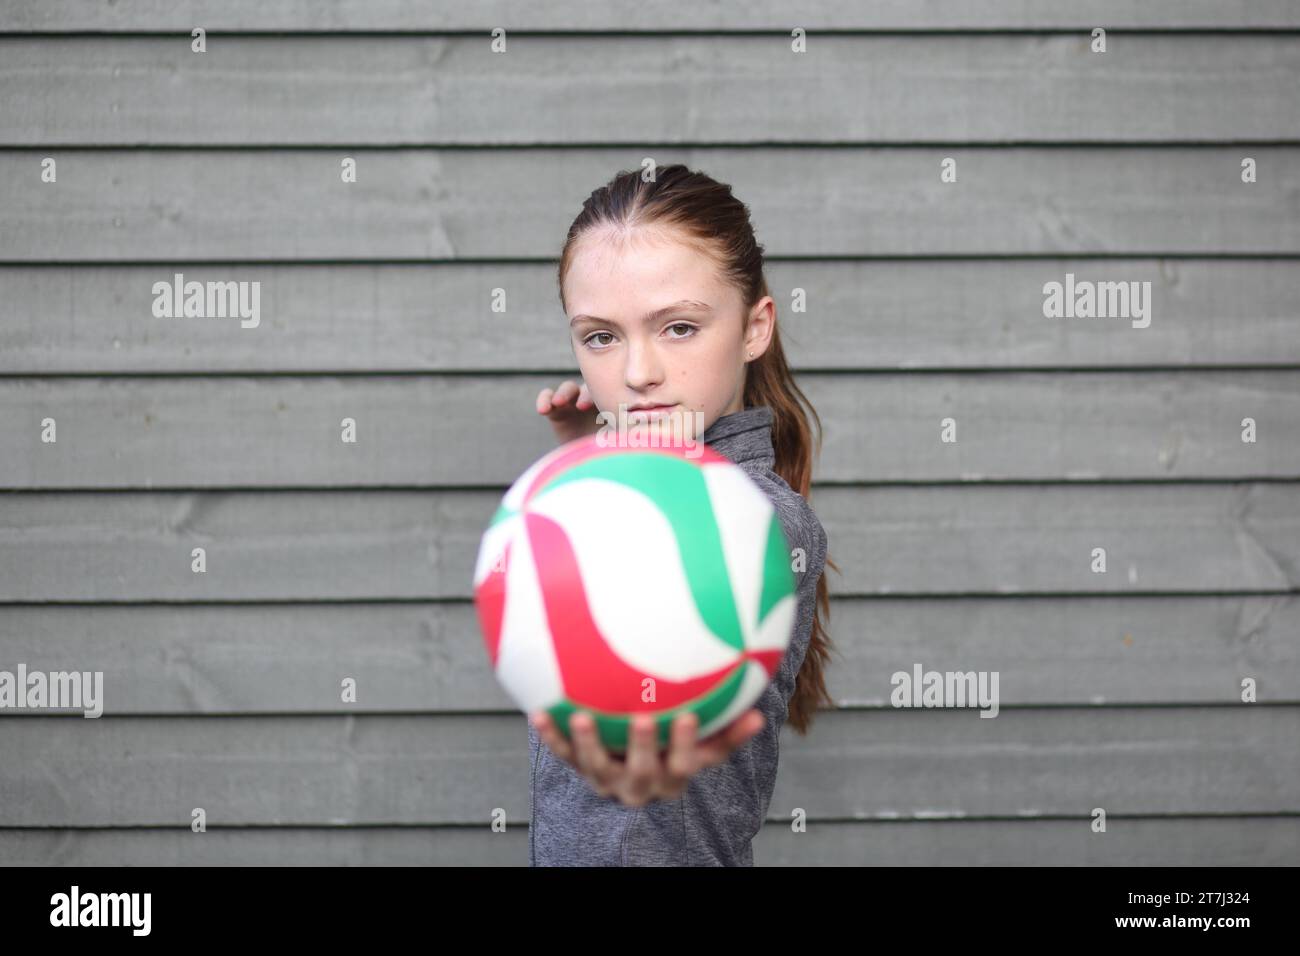 La ragazza adolescente tiene la pallavolo con la mano pronta a servire, fissando il copyspace della telecamera Foto Stock